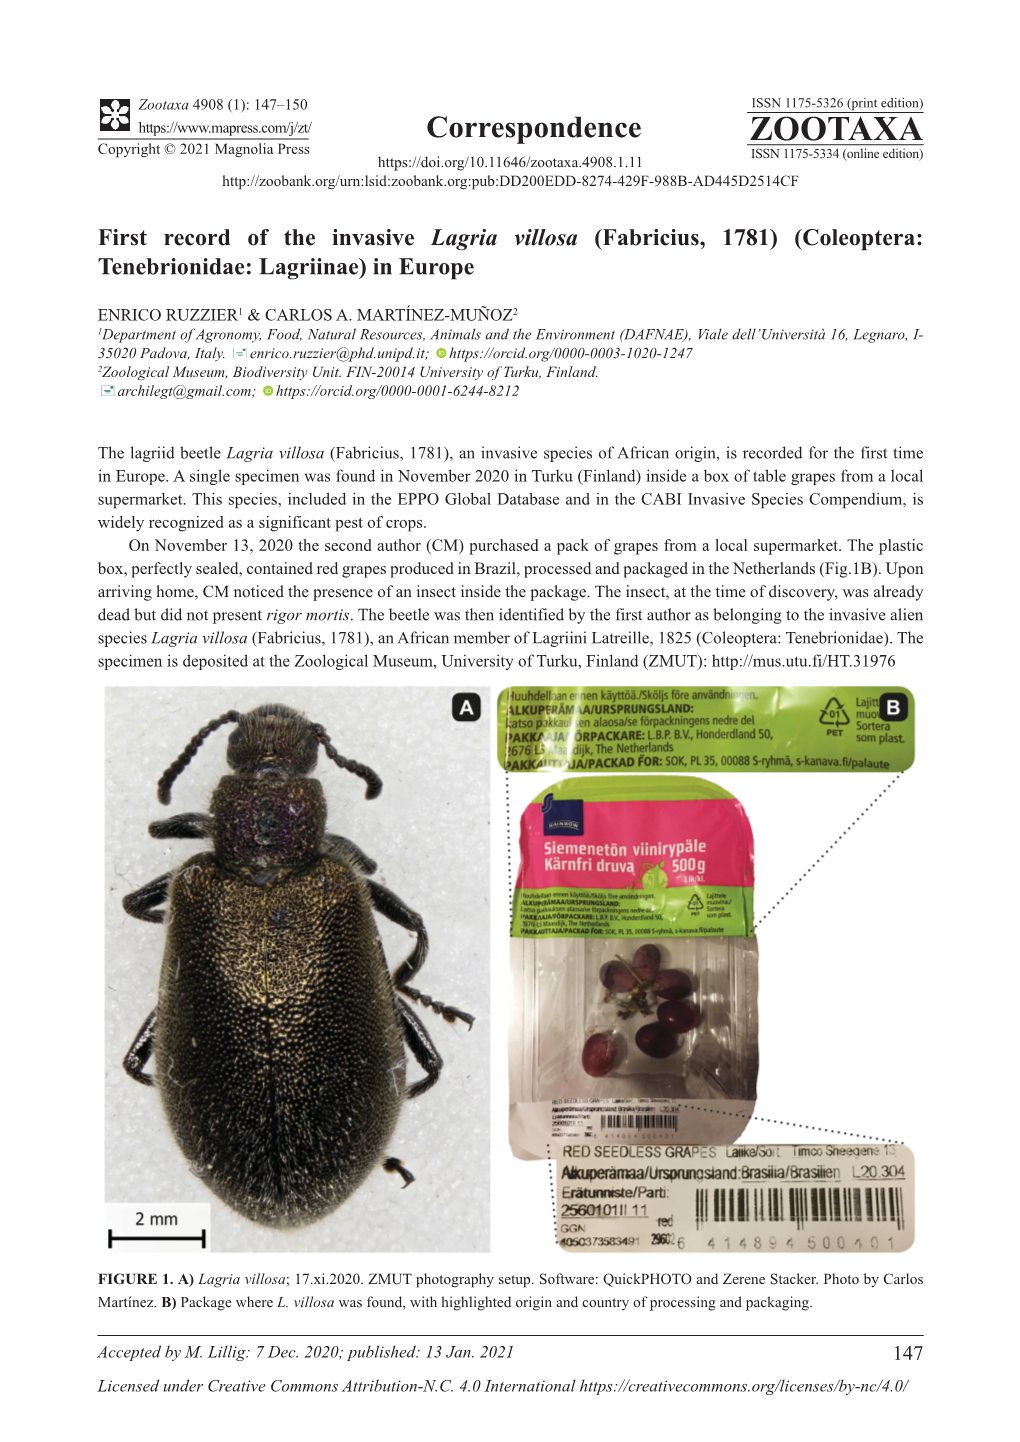 First Record of the Invasive Lagria Villosa (Fabricius, 1781) (Coleoptera: Tenebrionidae: Lagriinae) in Europe